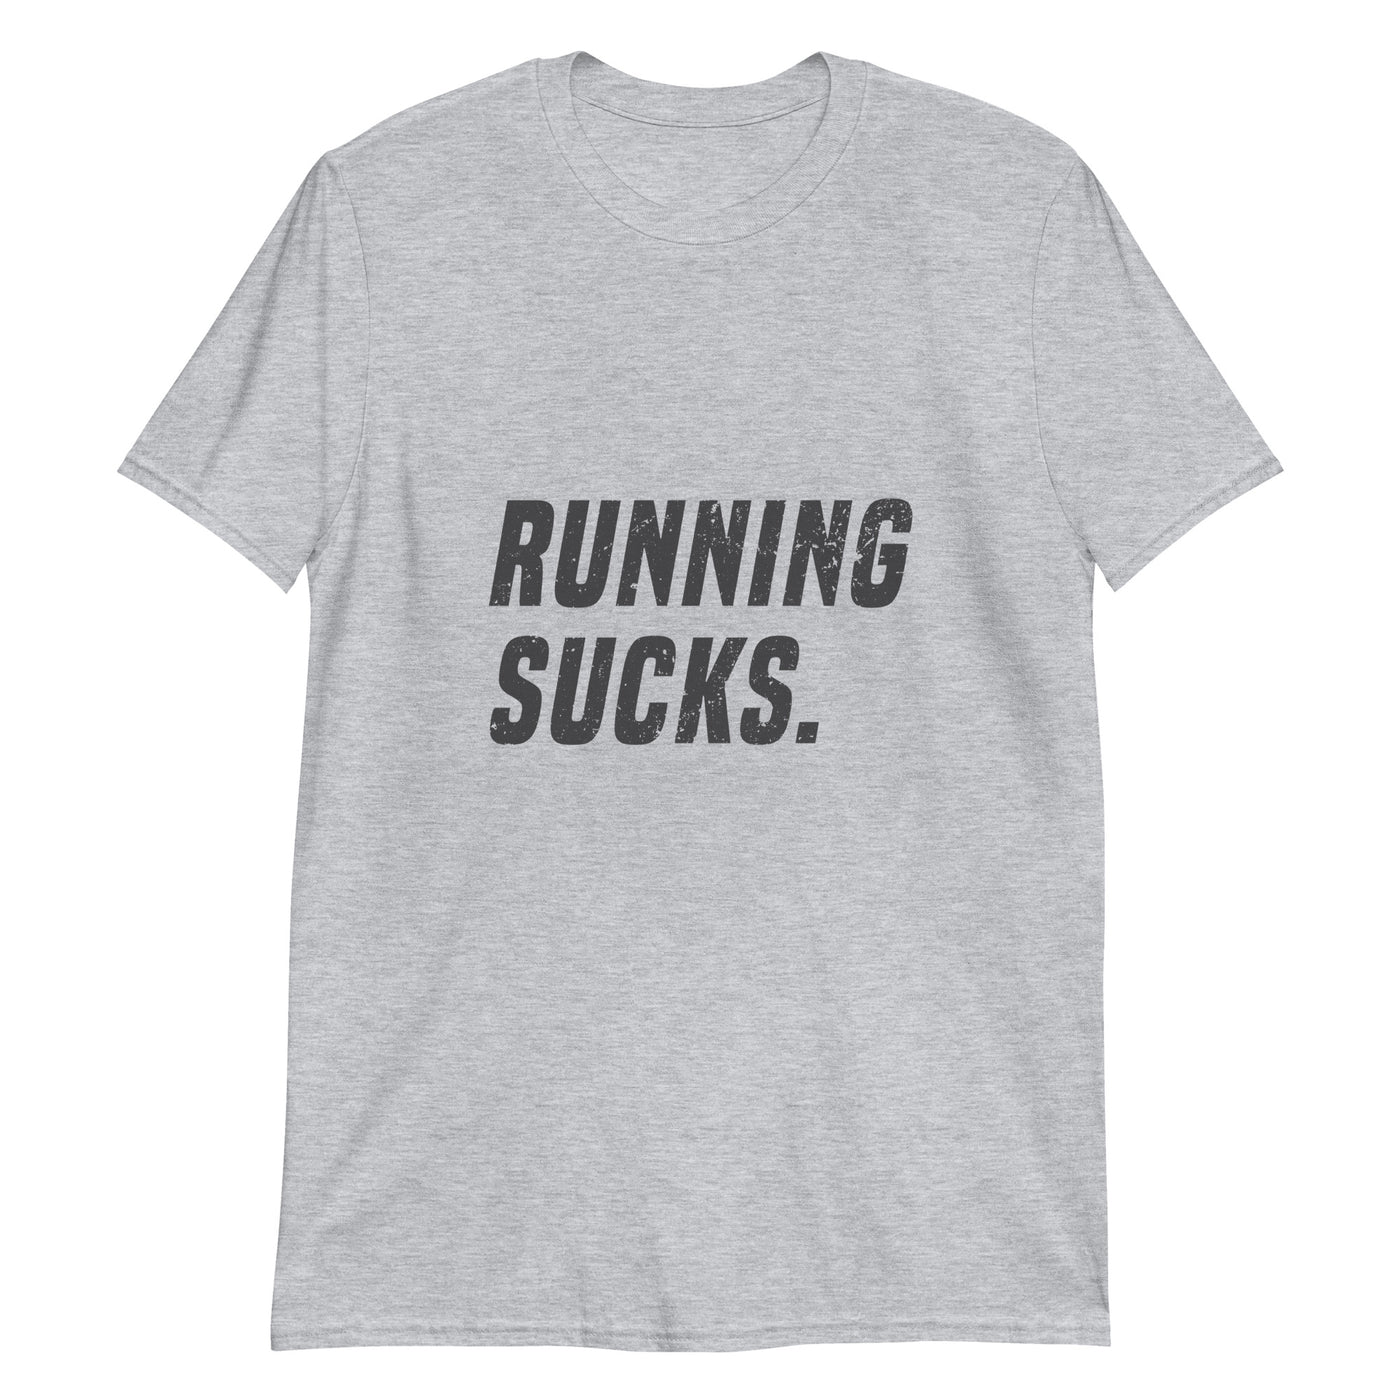 Running sucks